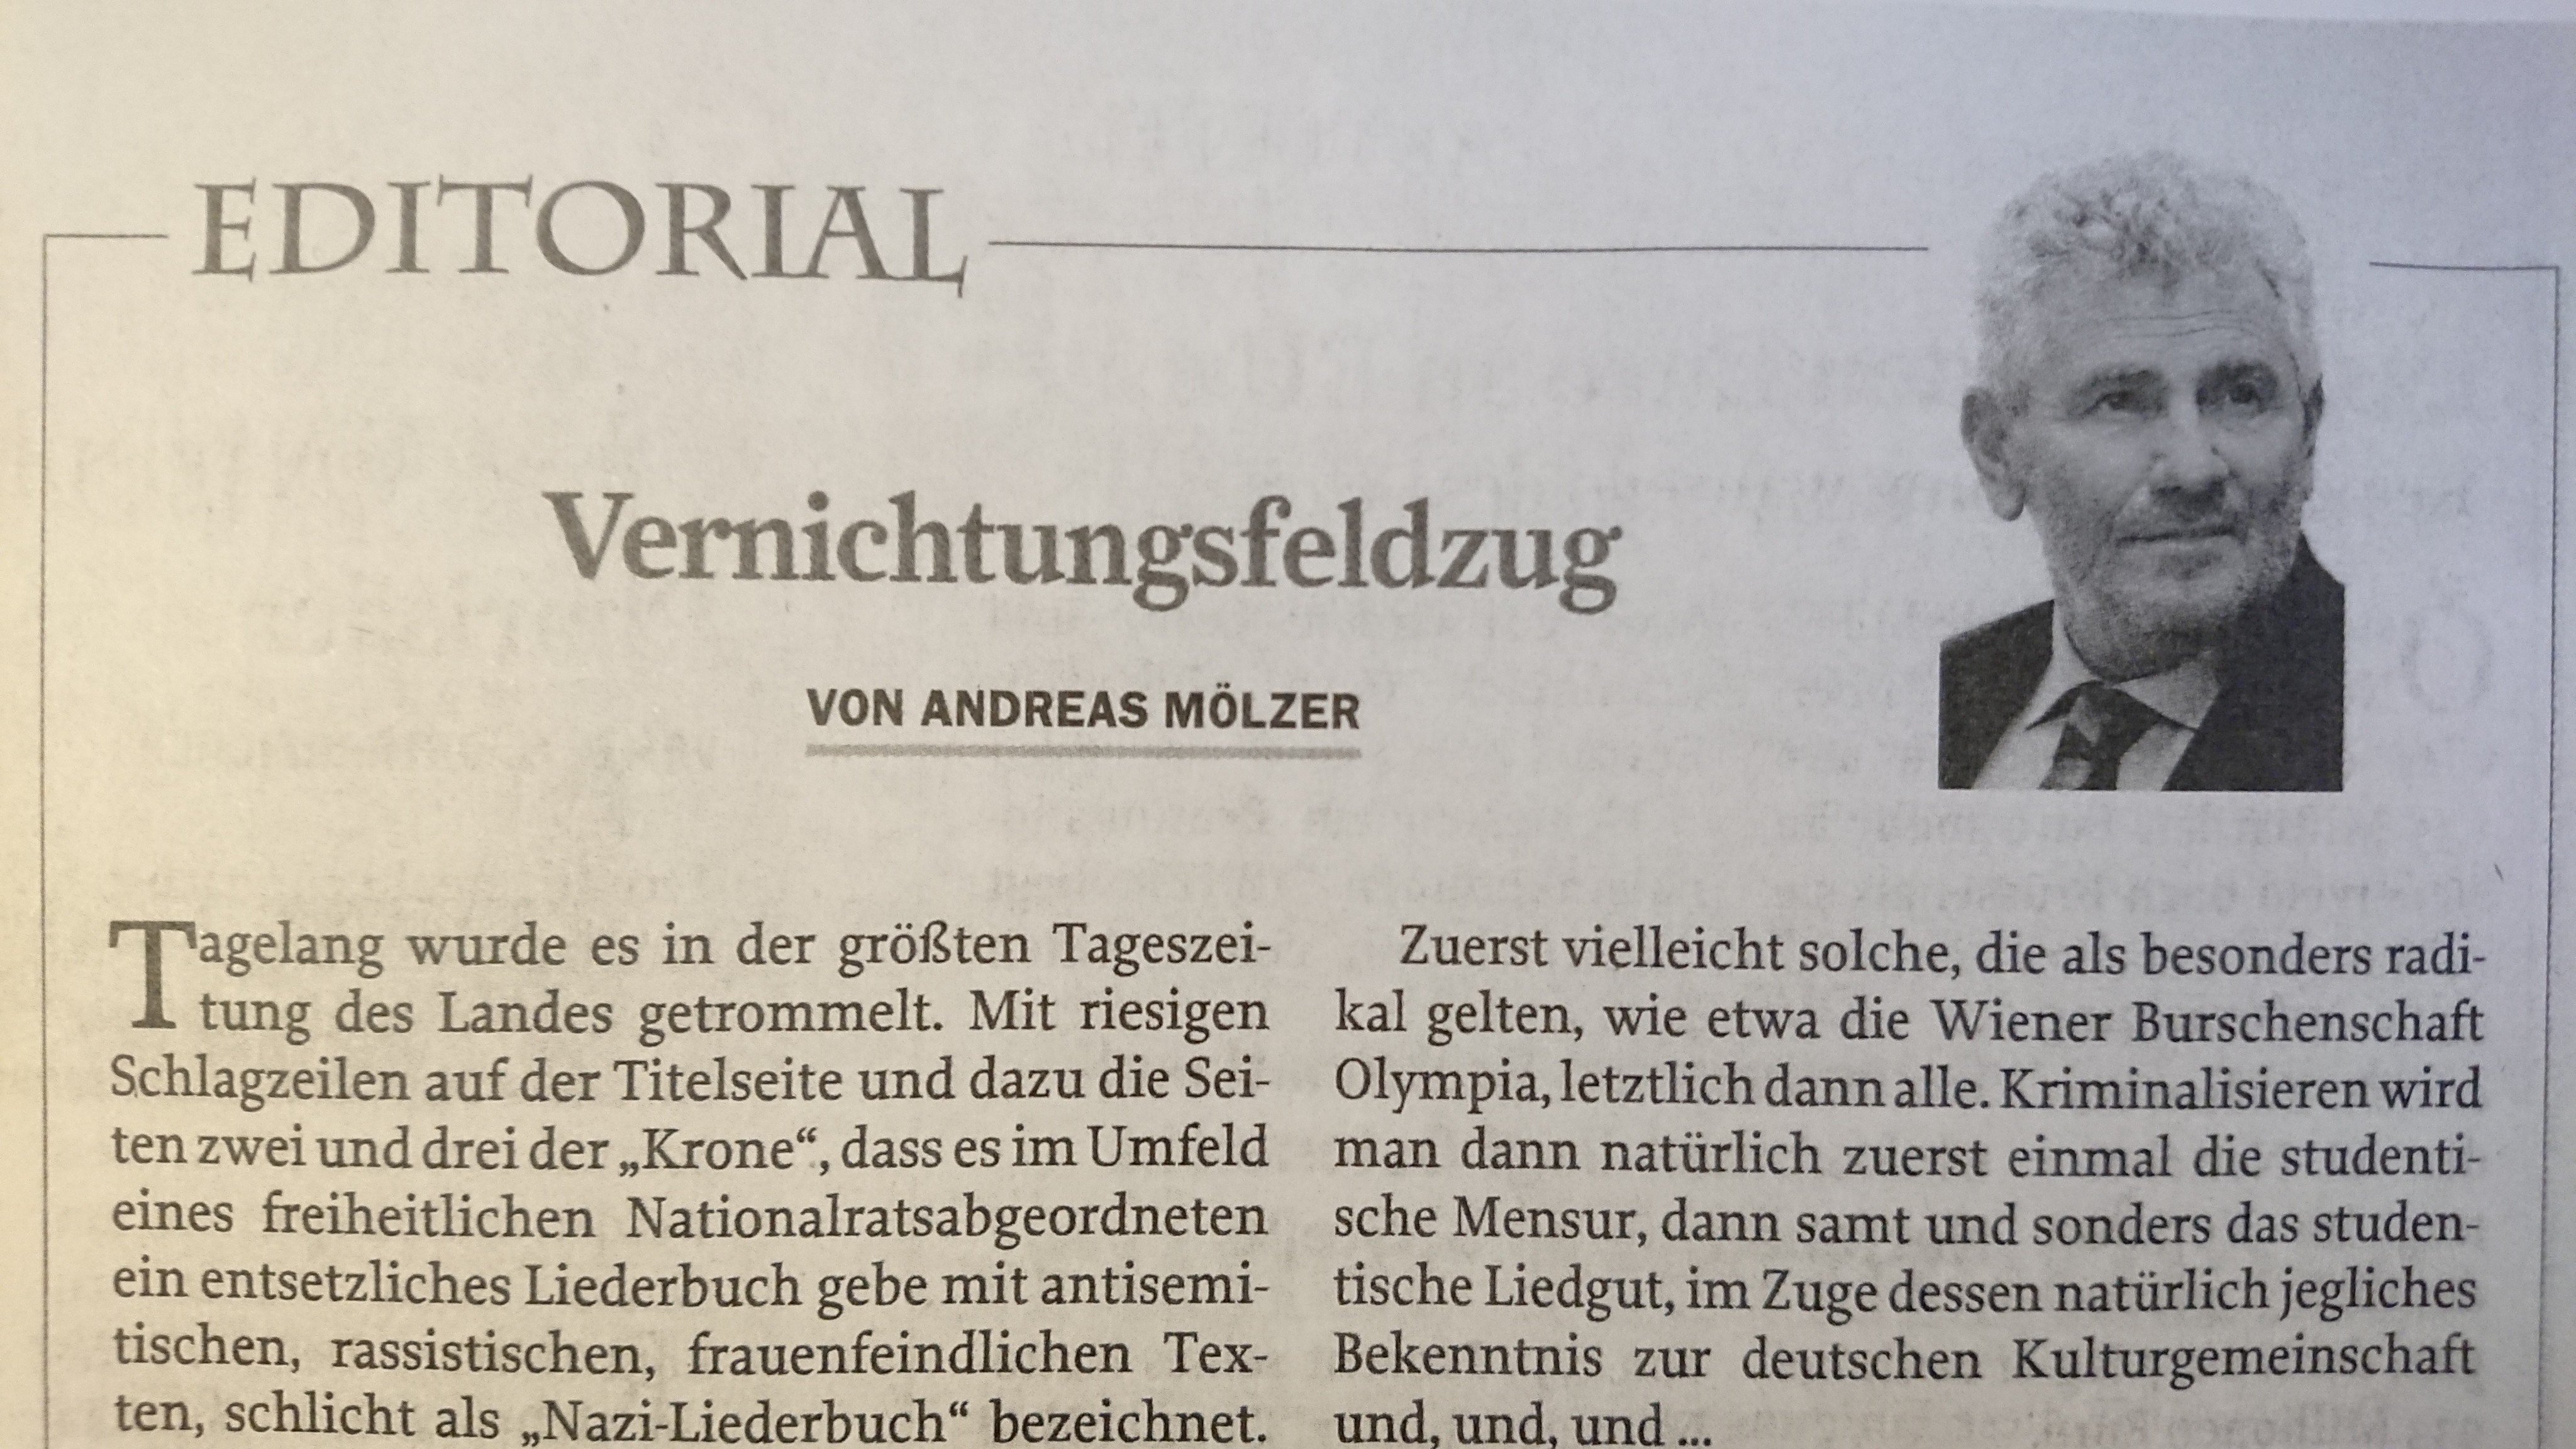 Andreas Mölzer in Zur Zeit: "Vernichtungsfeldzug"